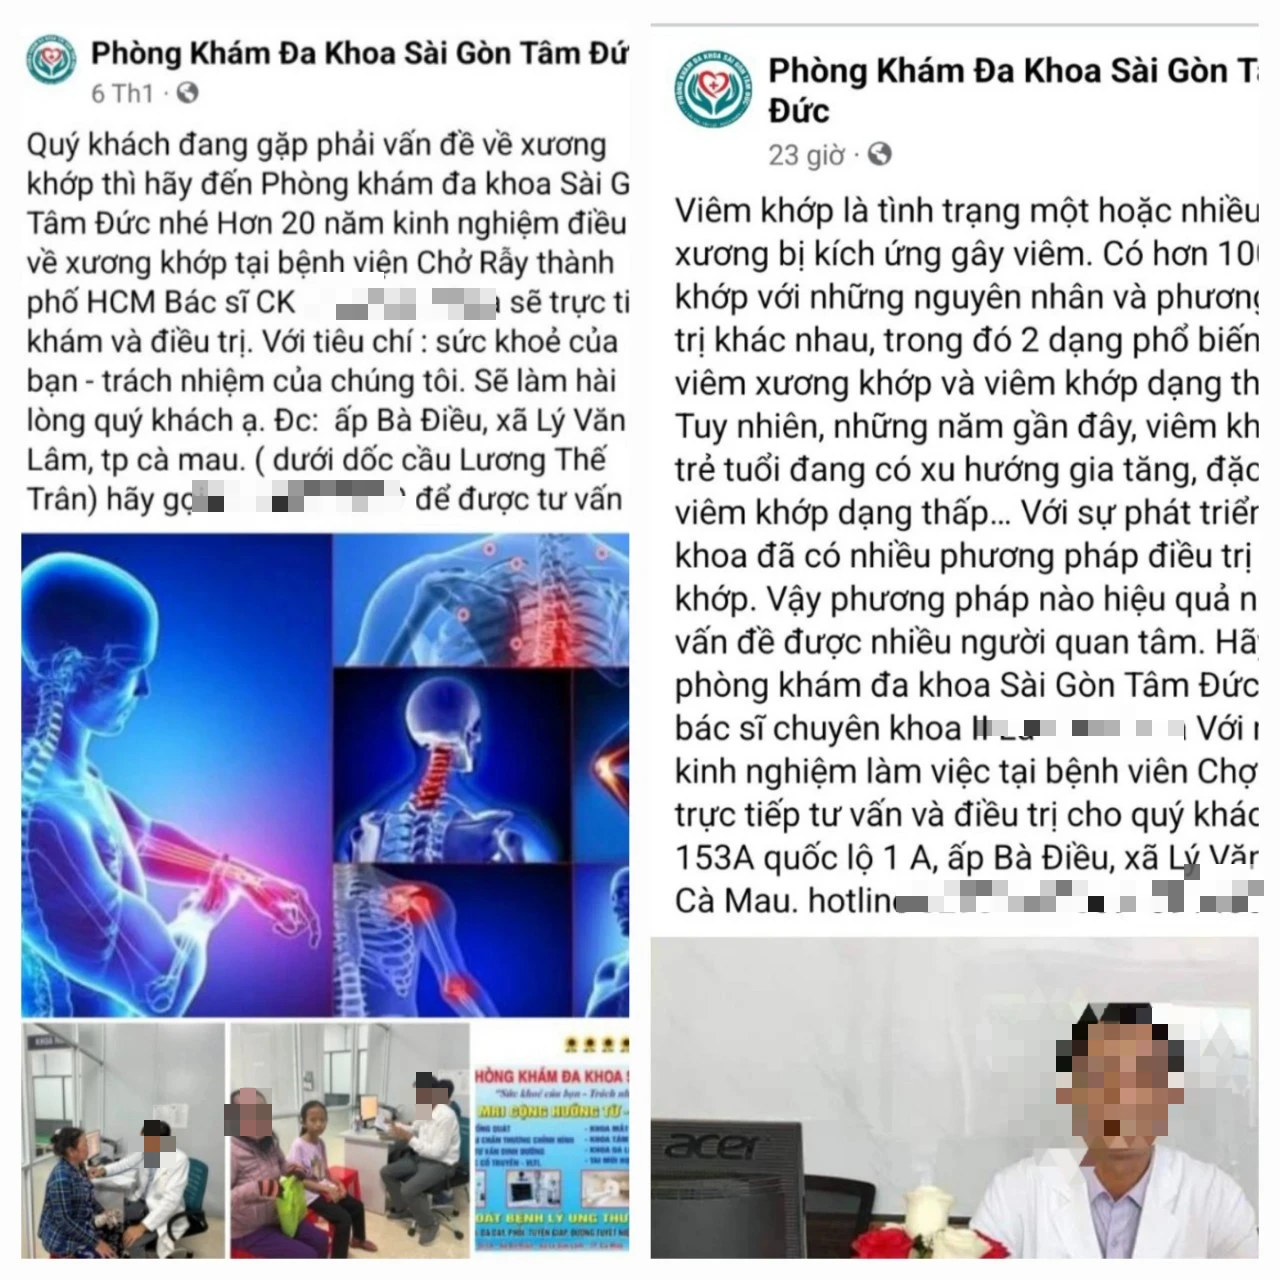 Fanpage của Phòng khám đa khoa Sài Gòn Tâm Đức quảng cáo sai sự thật